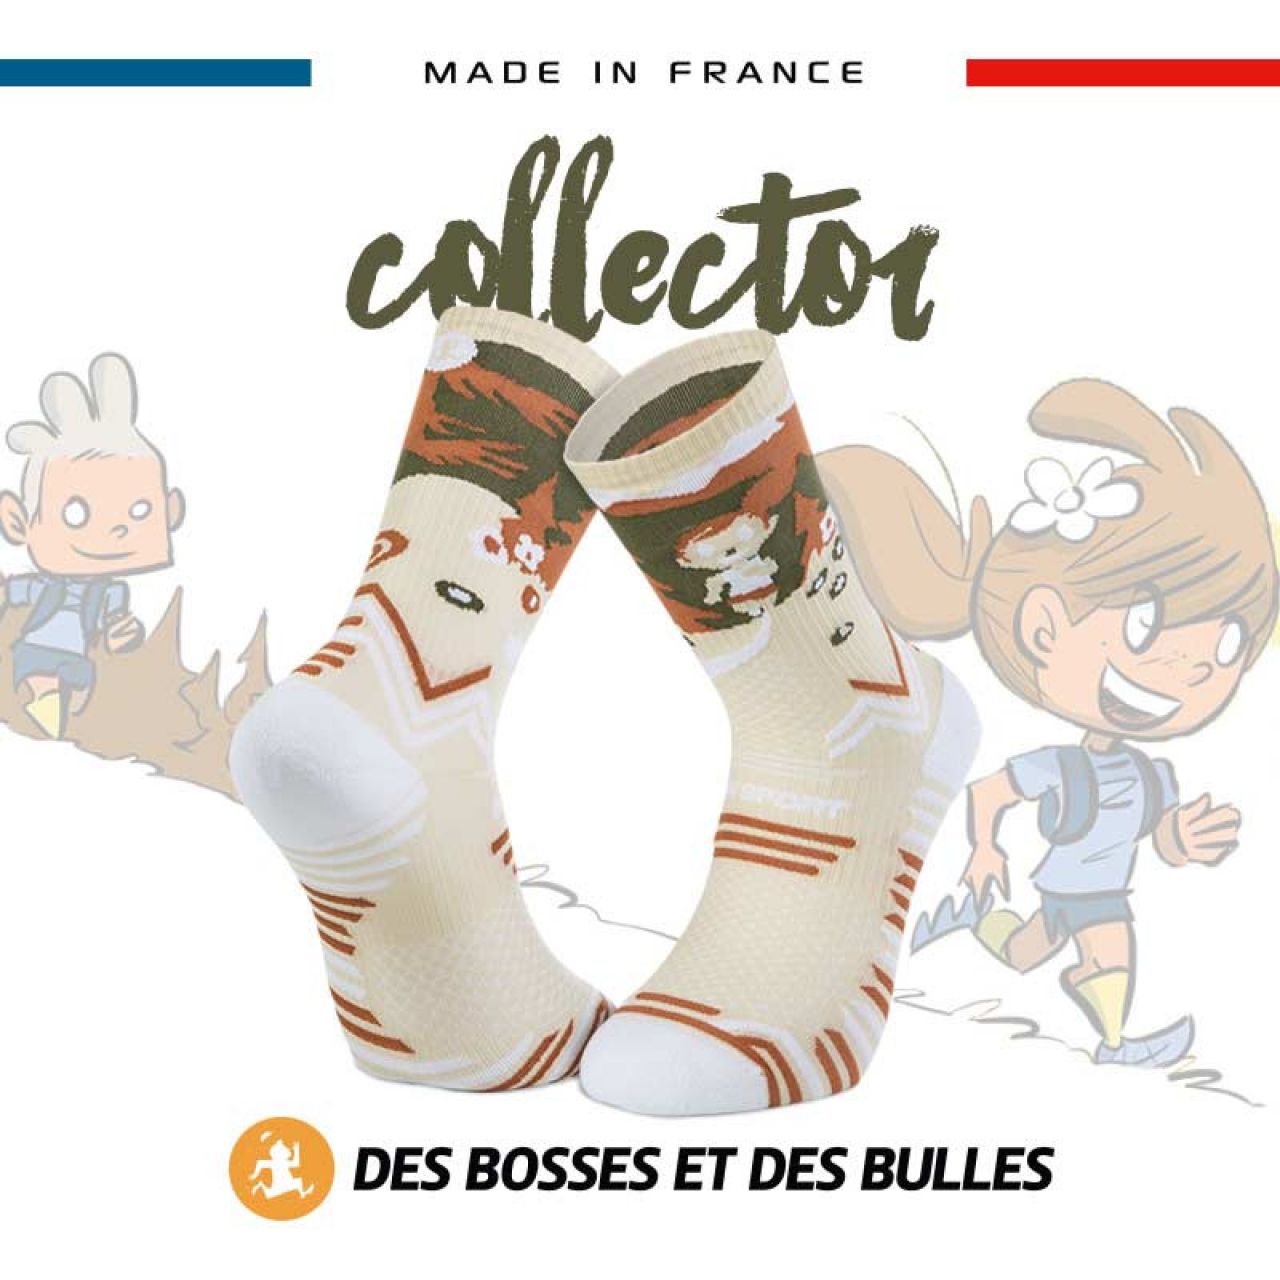 La chaussettes TRAIL Ultra-Collector Des Bosses et Des Bulles qui